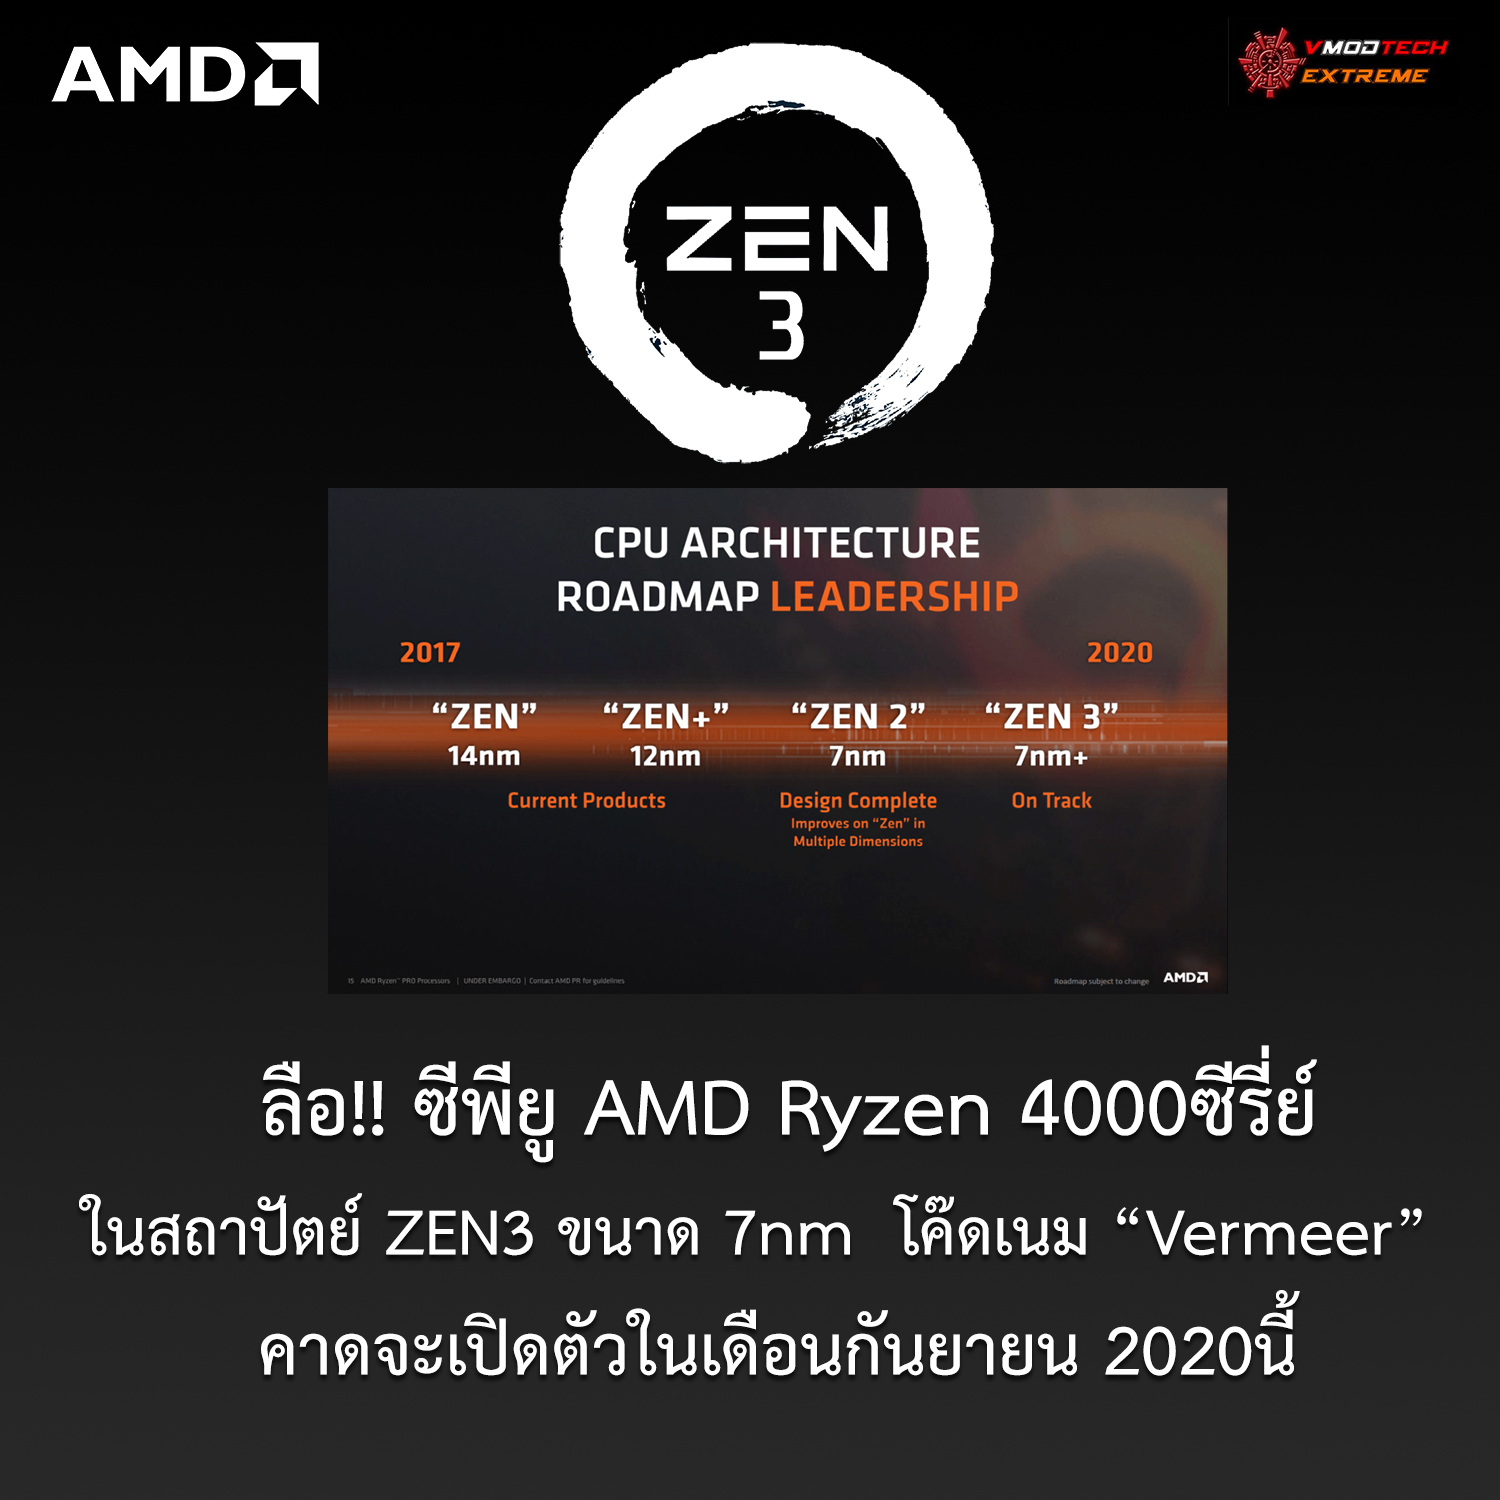 ลือ!! ซีพียู AMD Ryzen 4000ซีรี่ย์ในสถาปัตย์ ZEN3 รุ่นใหม่ล่าสุดคาดจะเปิดตัวในเดือนกันยายน 2020นี้ 